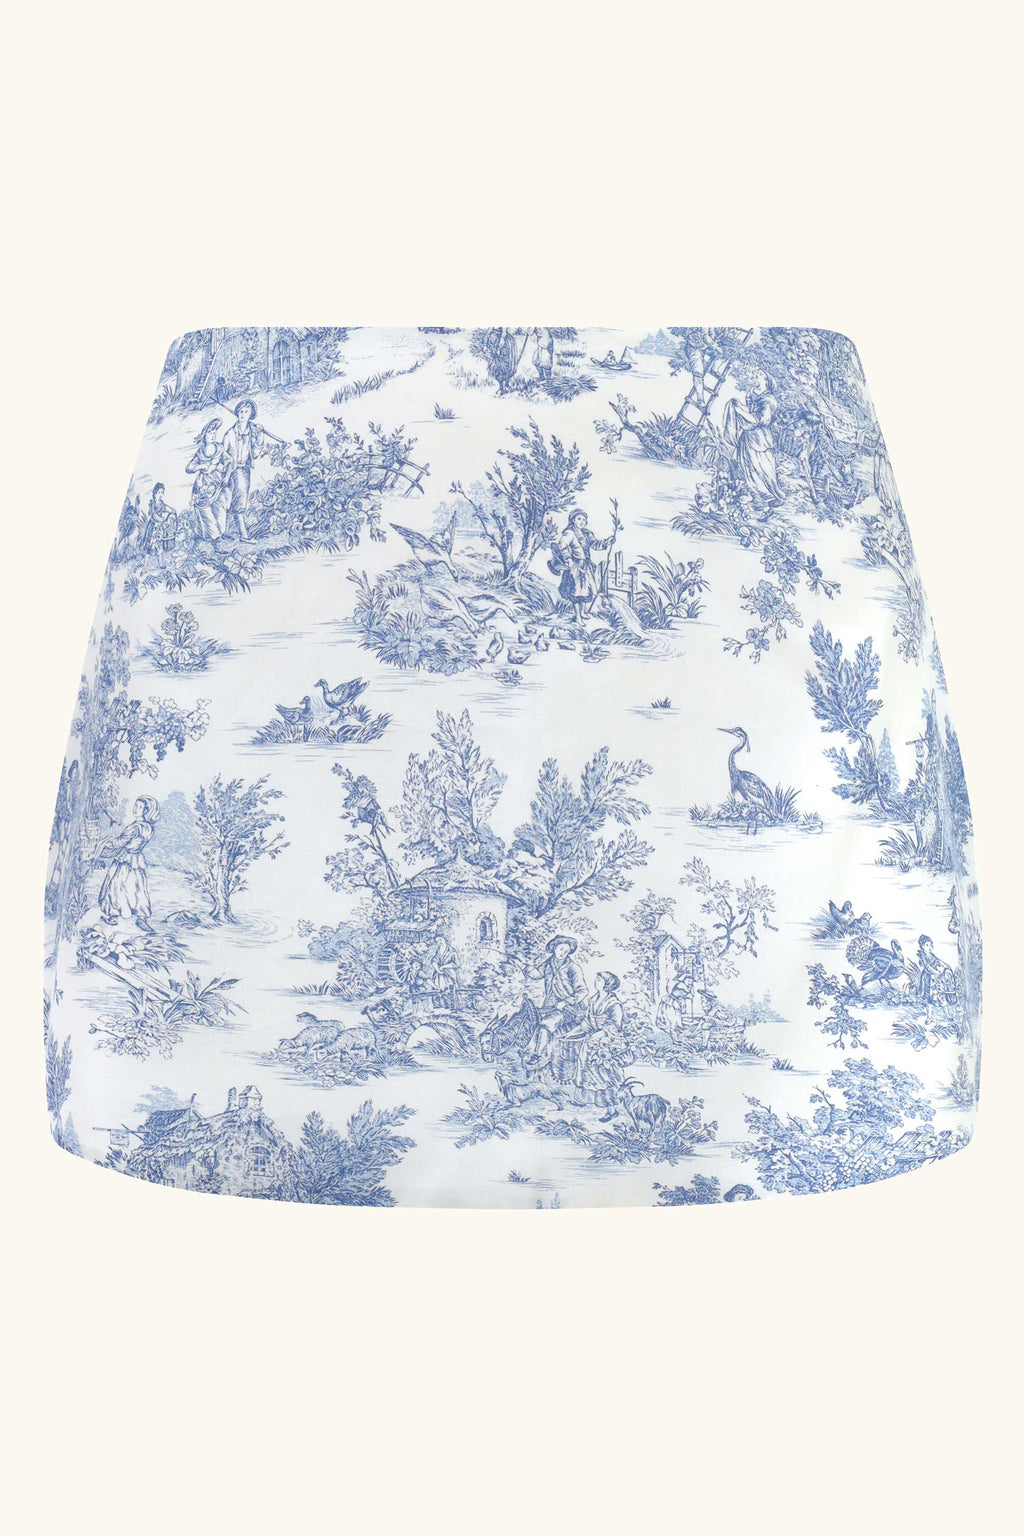 Roya Skirt in Blue Toile de Jouy